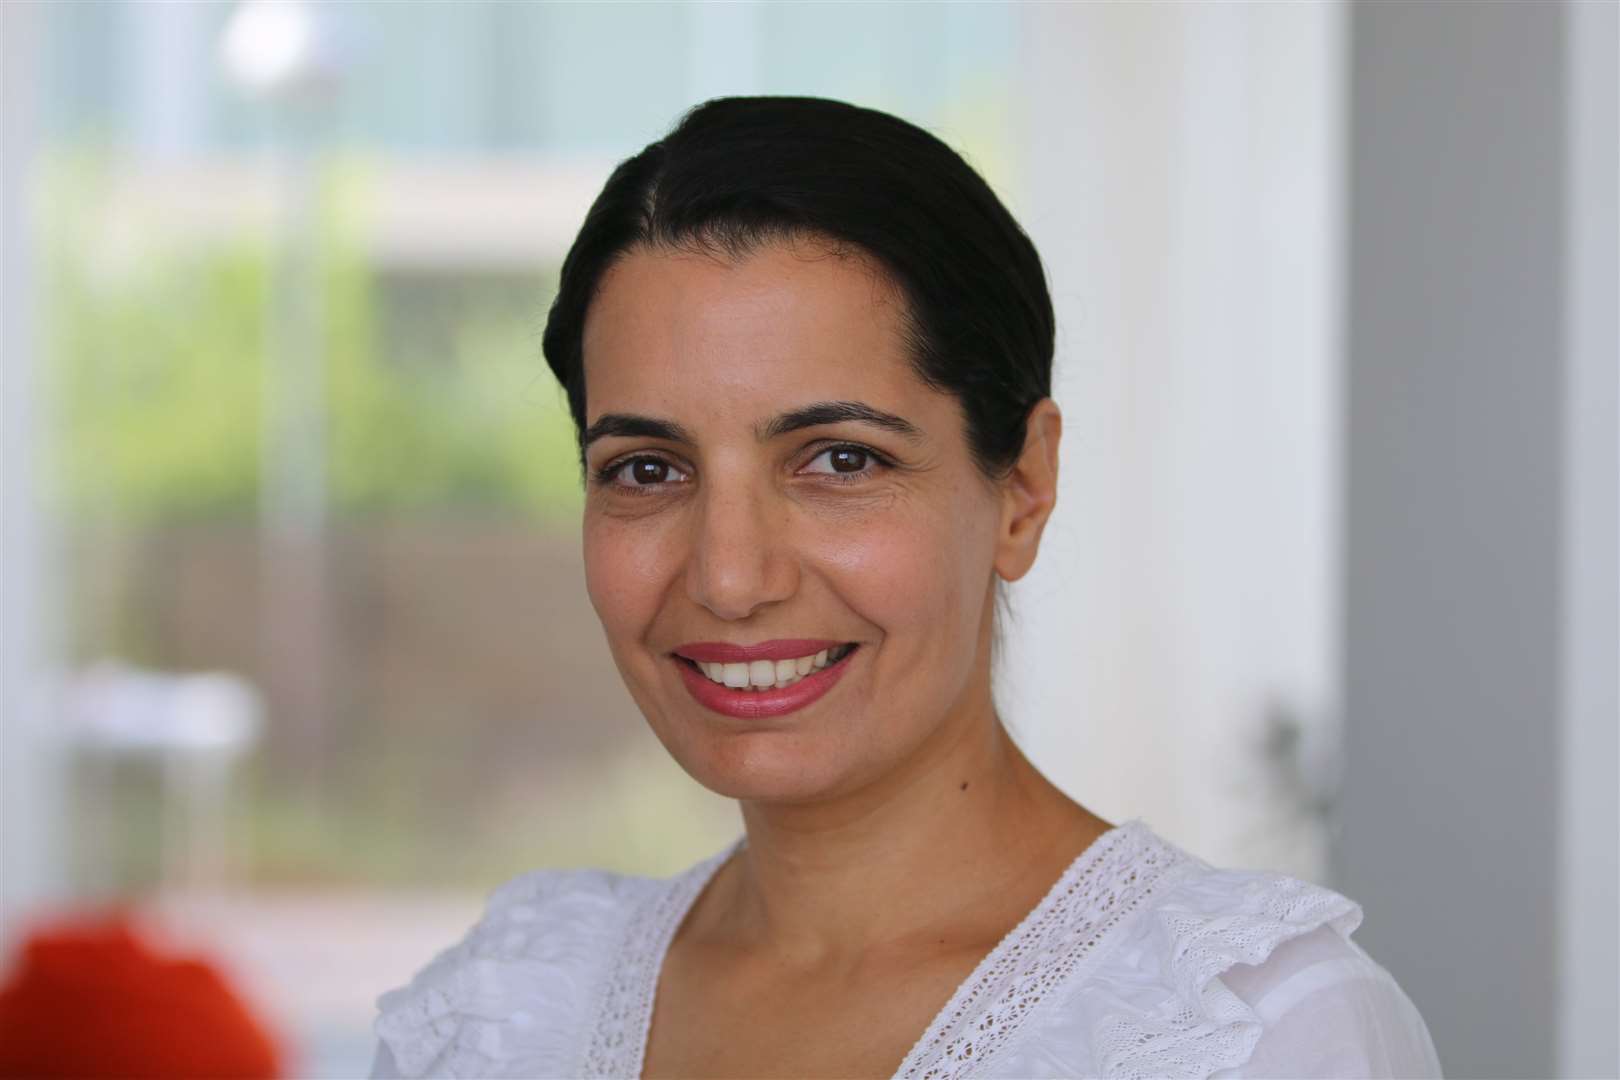 SUPPORTIVE: Dr Kalanit Ben-Ari